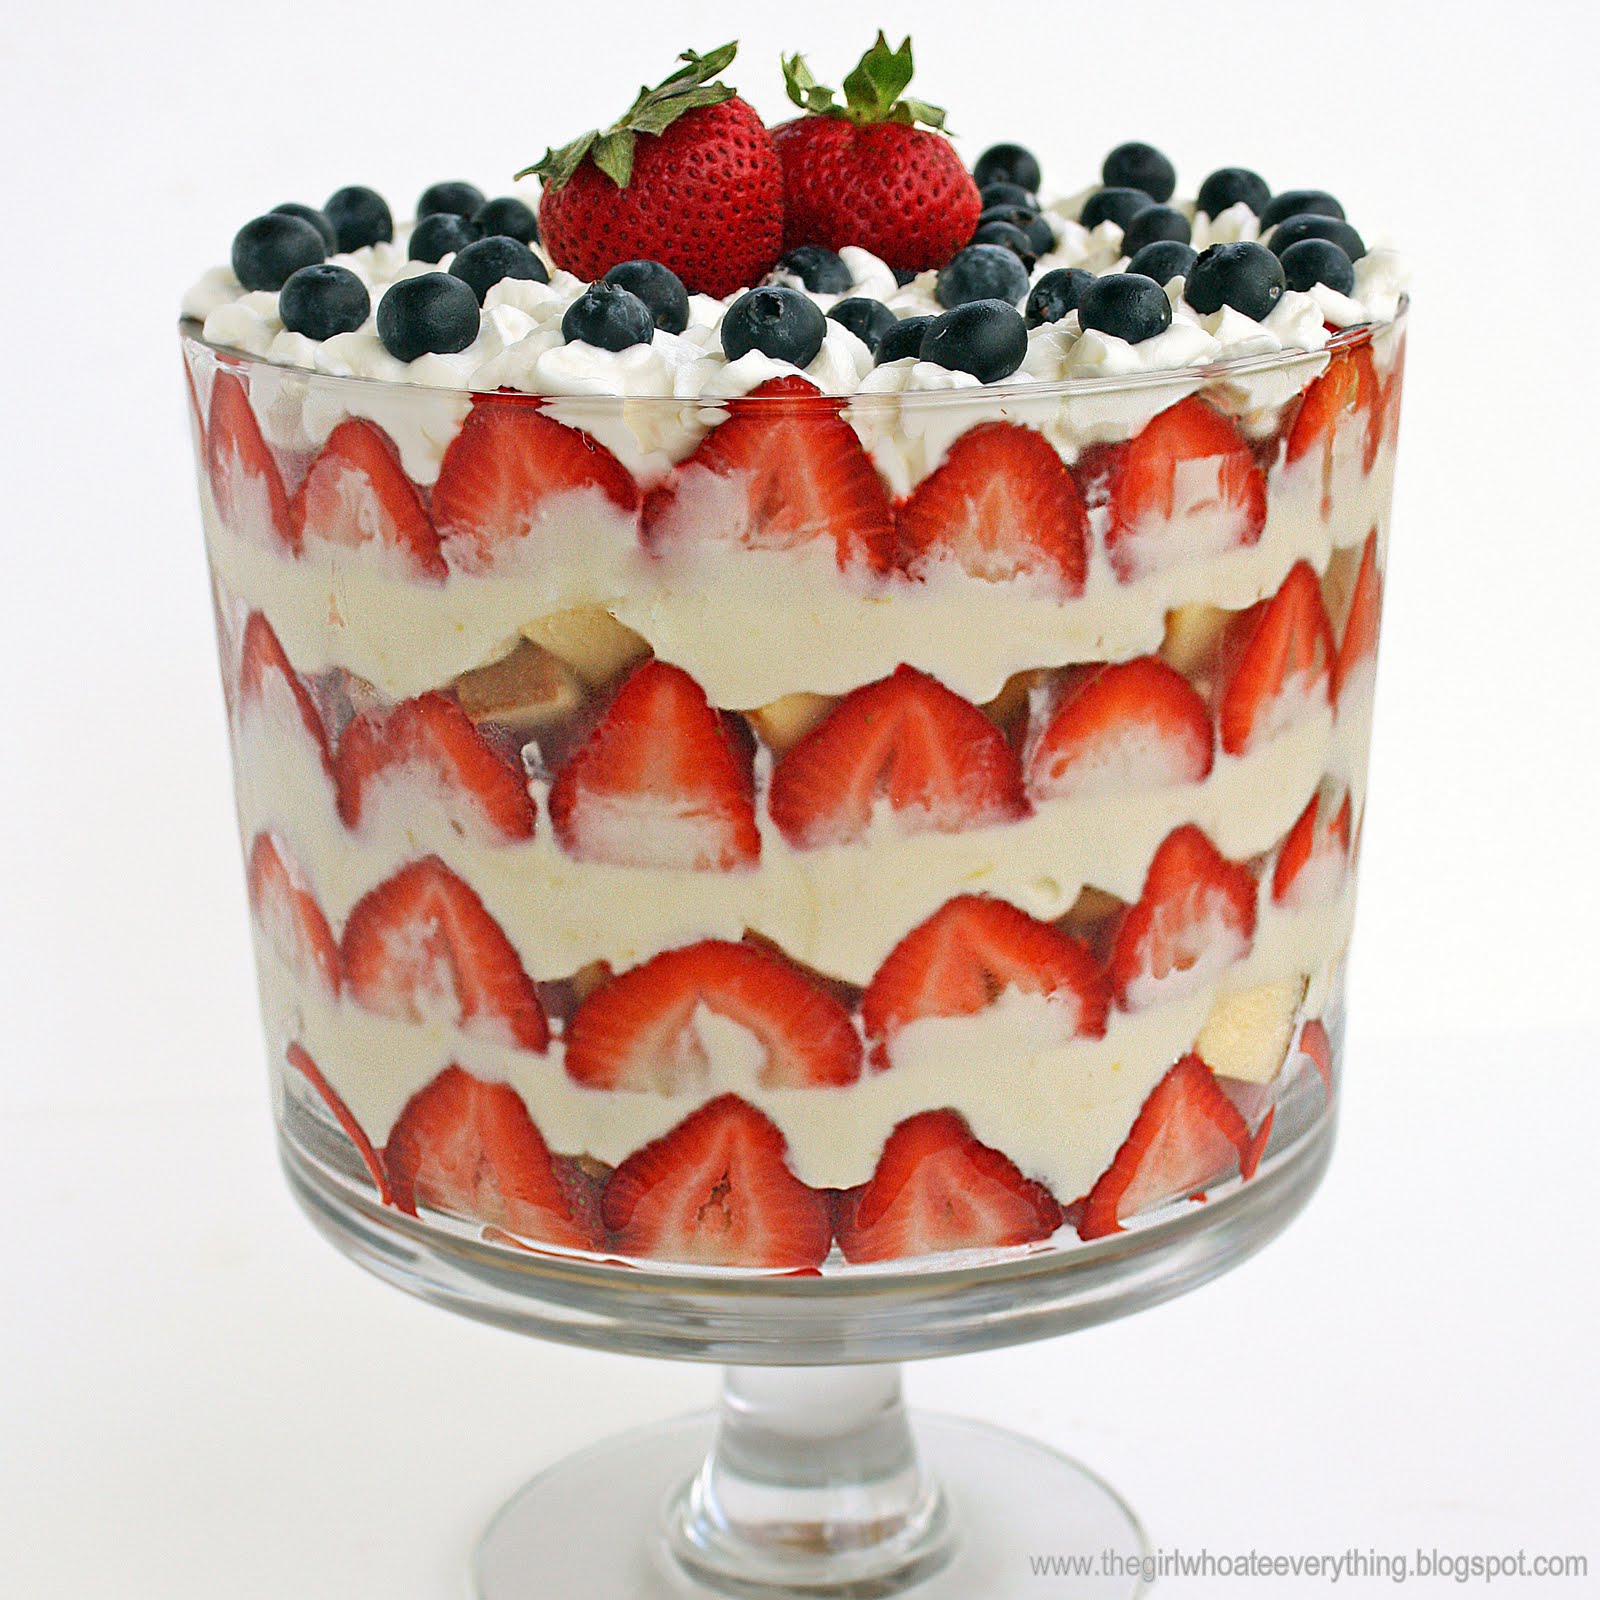 "Trifle" - à base de crème pâtissière, fruits, génoise, jus de fruits ou gélatine, et crème fouettée.